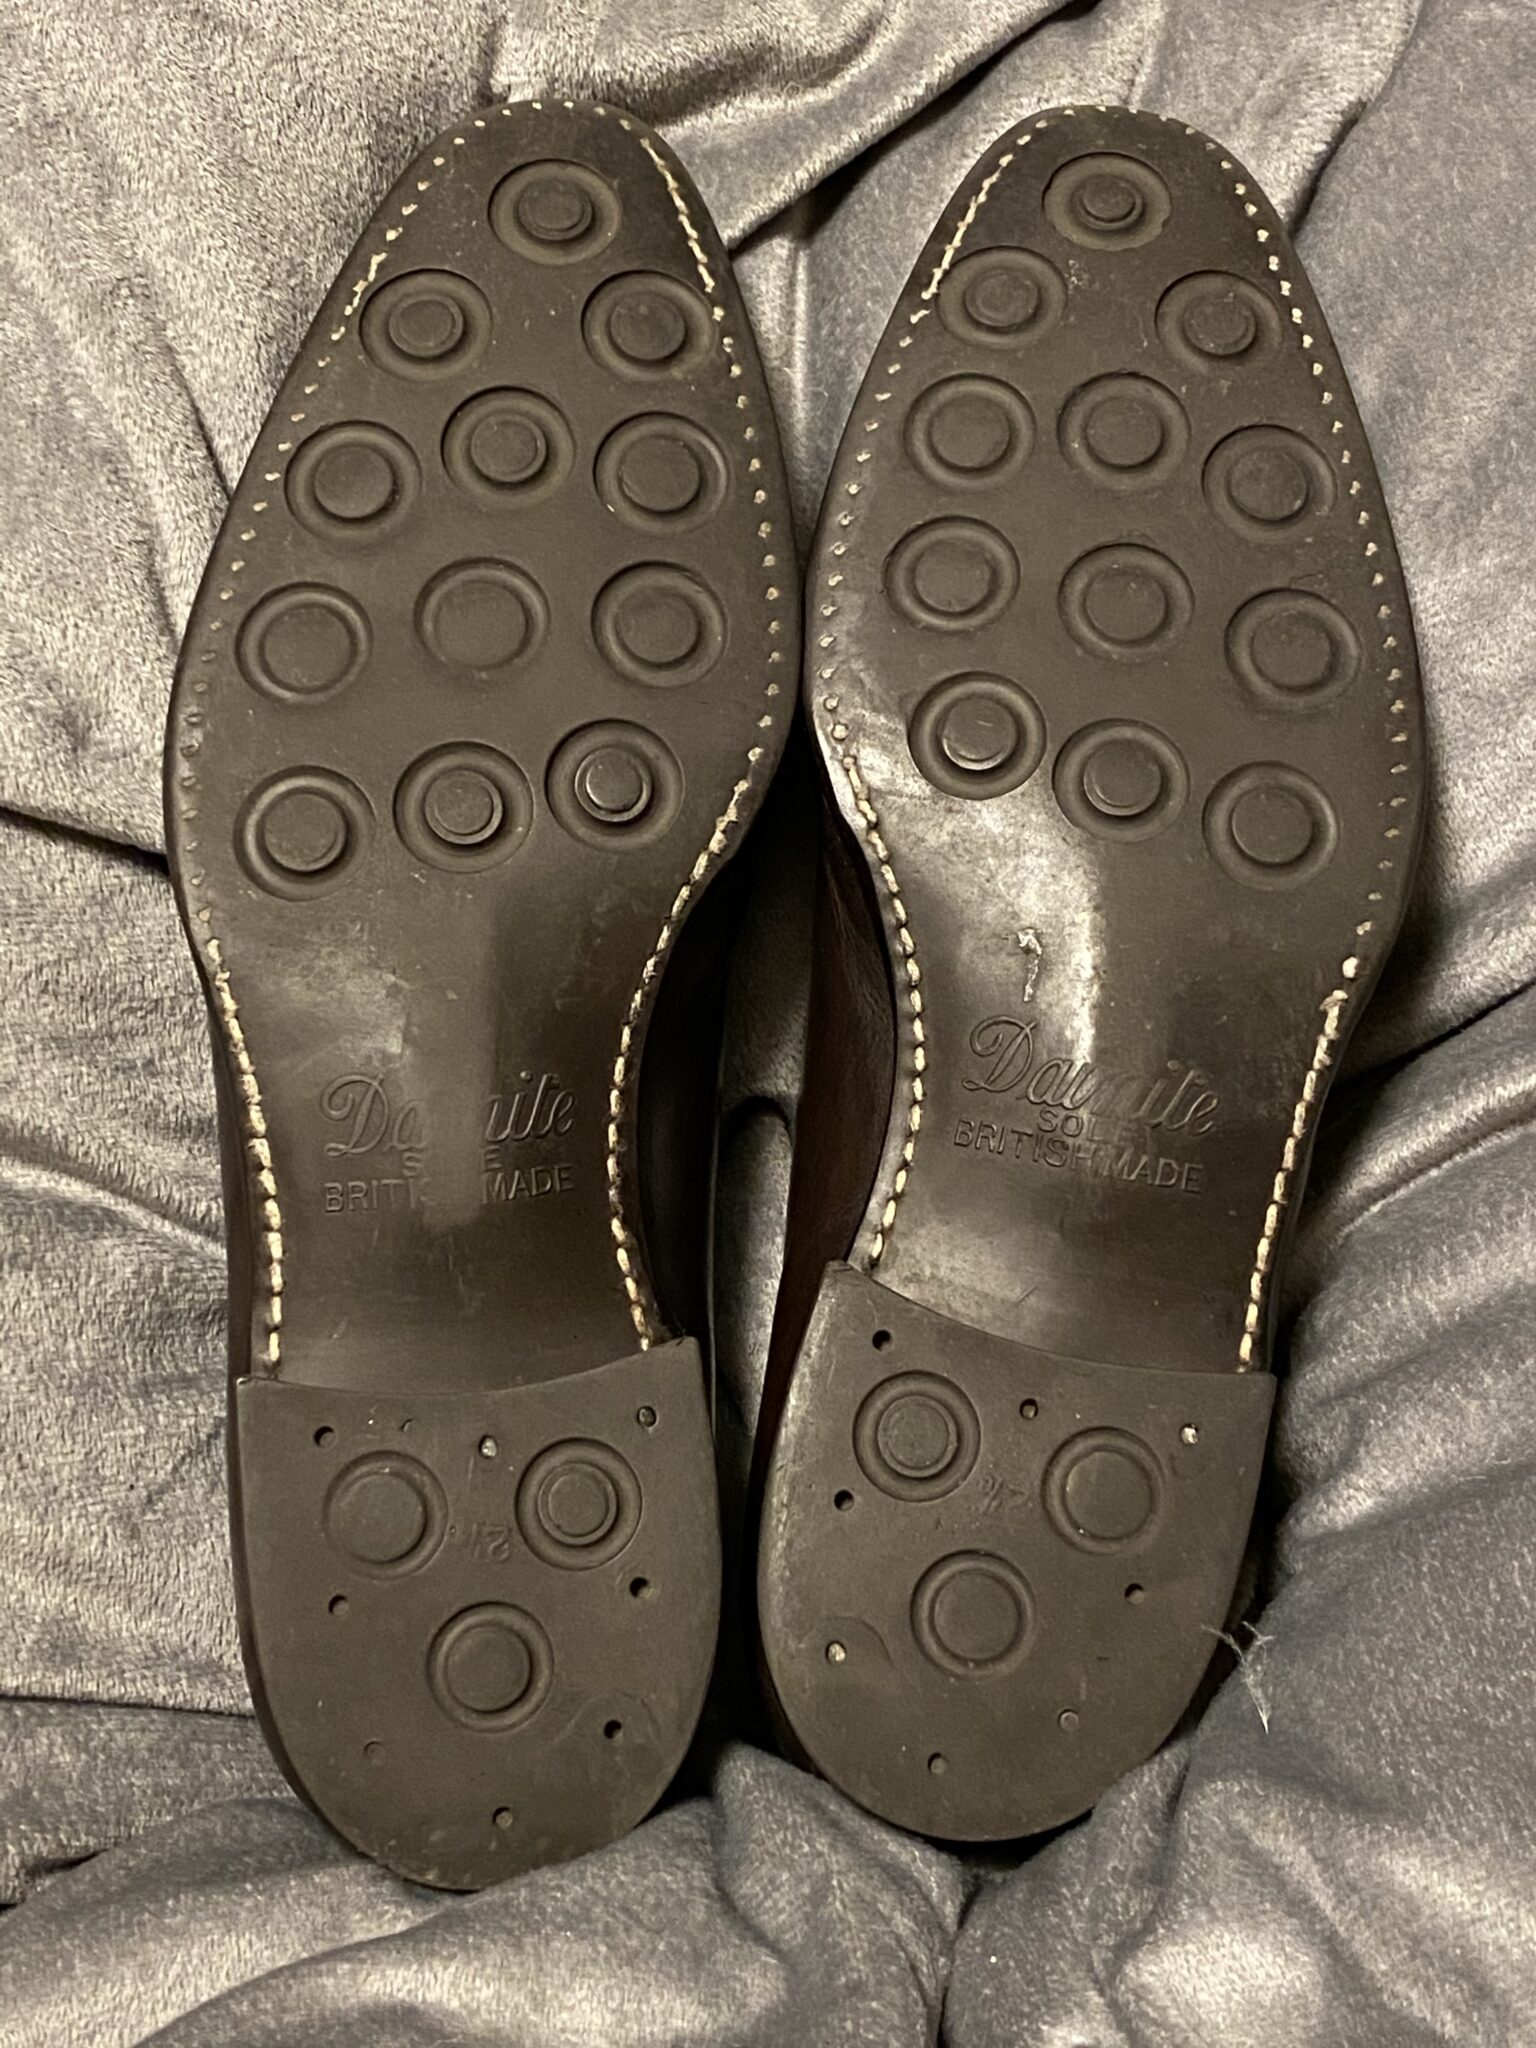 13年間雨の日に履き続けた『ユニオンインペリアル』ストレートチップのエイジング報告 - エンタメ革靴ブログ